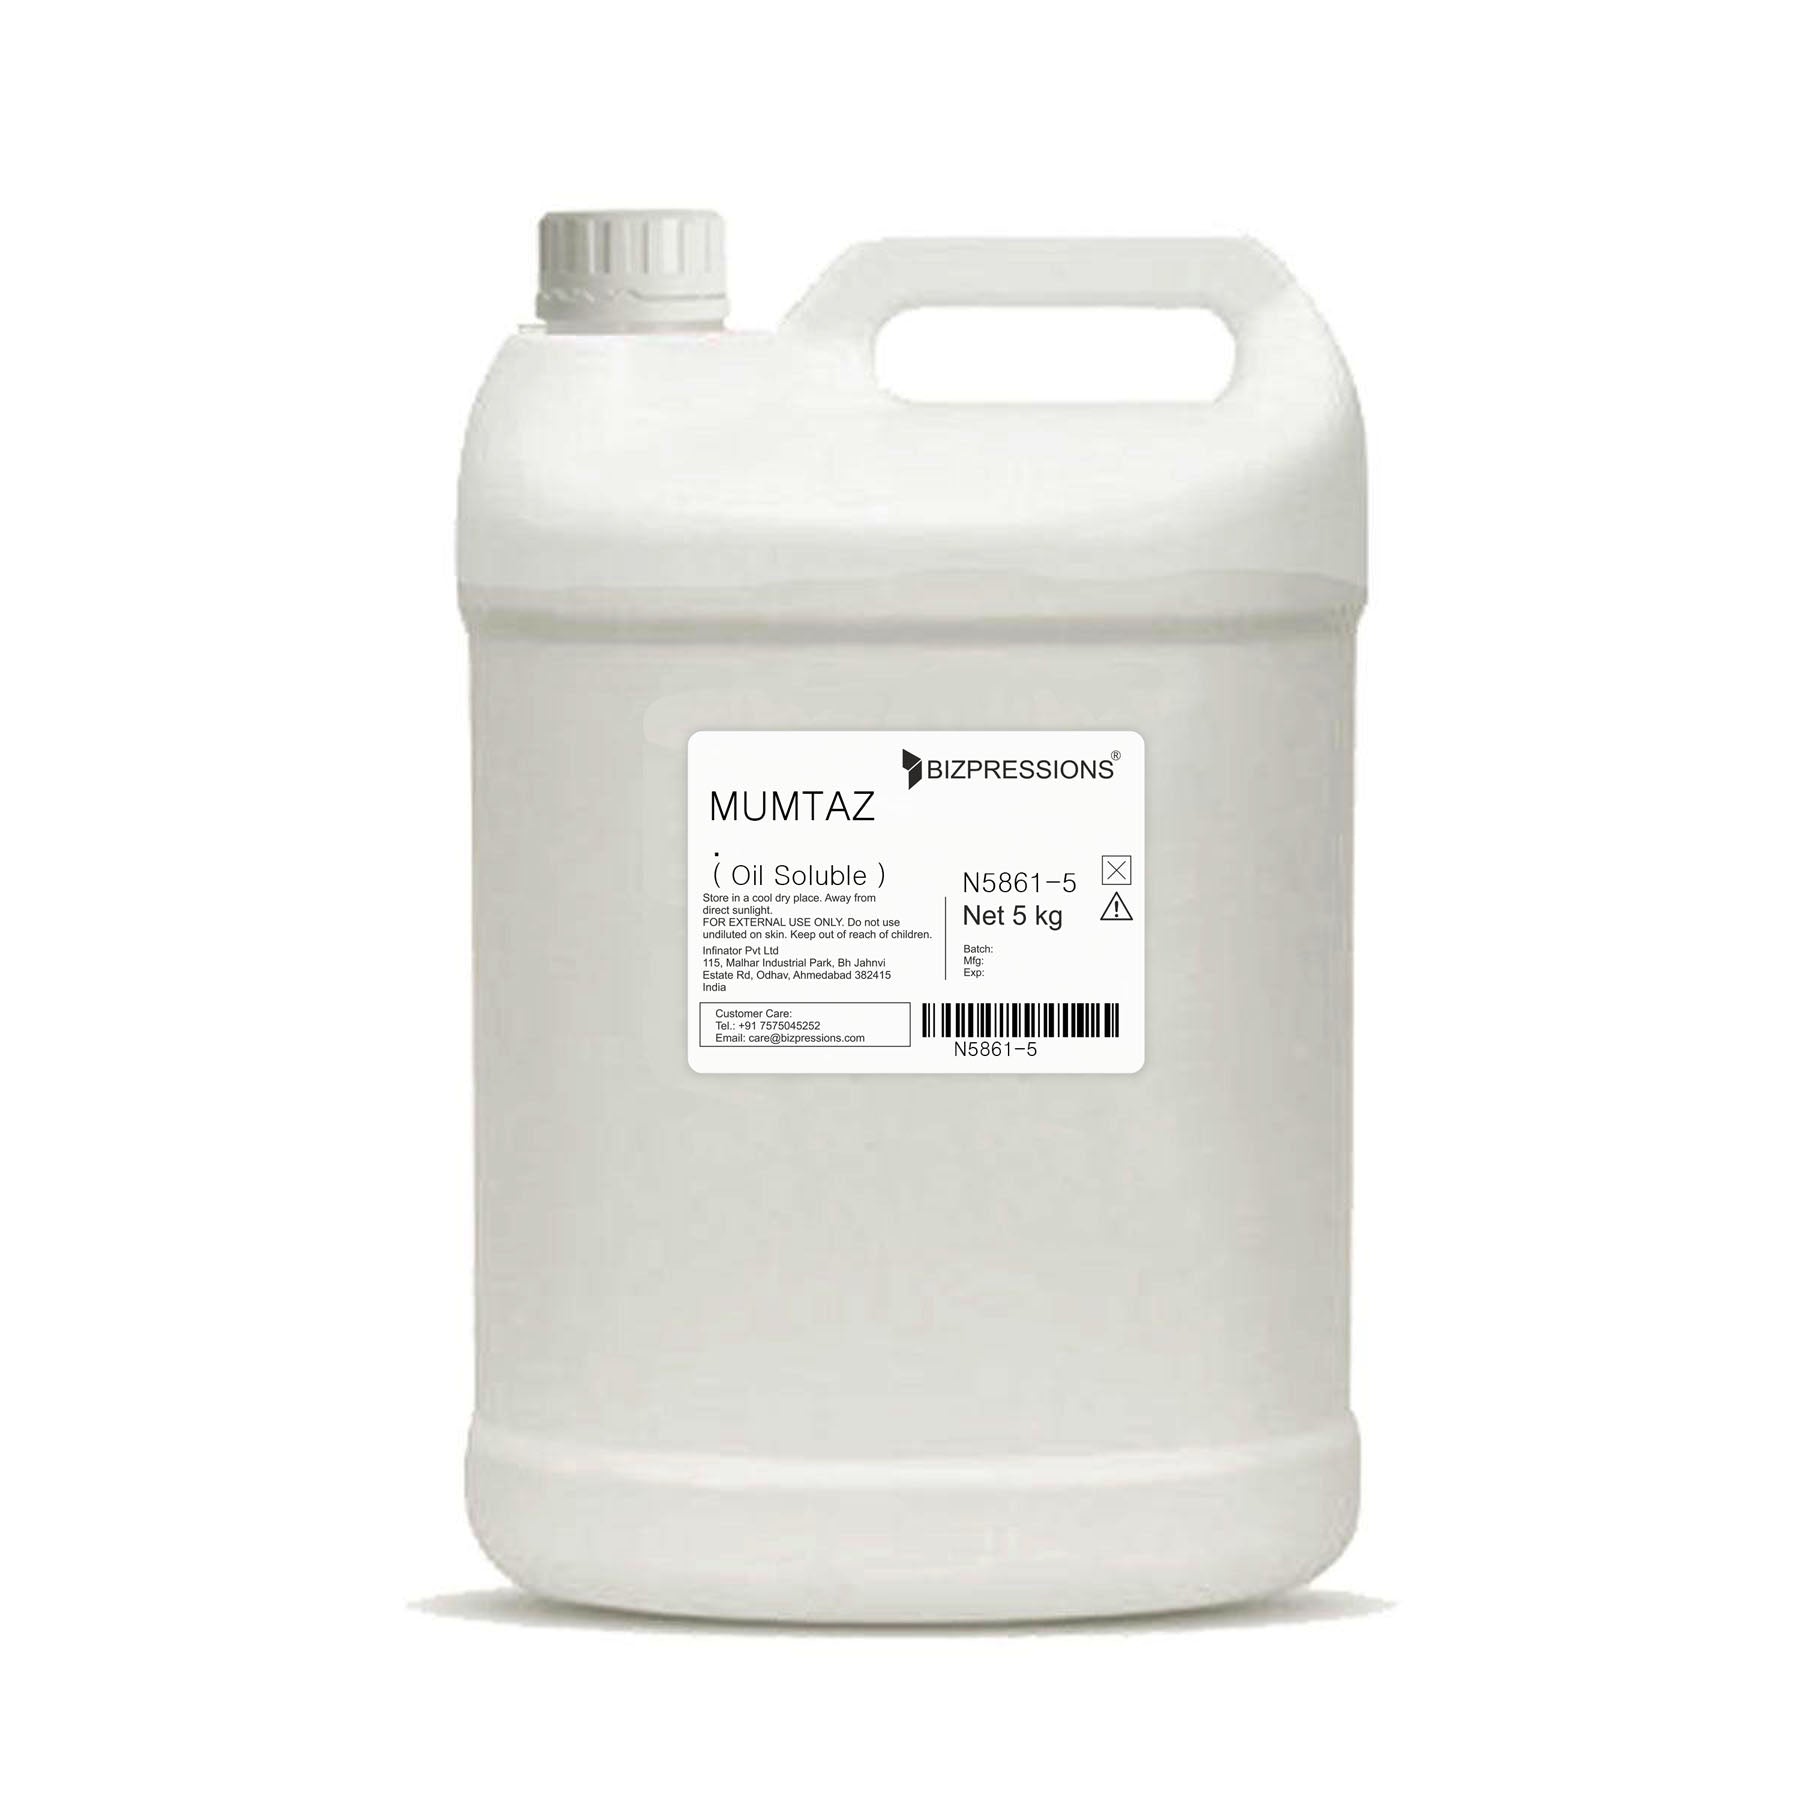 MUMTAZ - Fragrance ( Oil Soluble ) - 5 kg